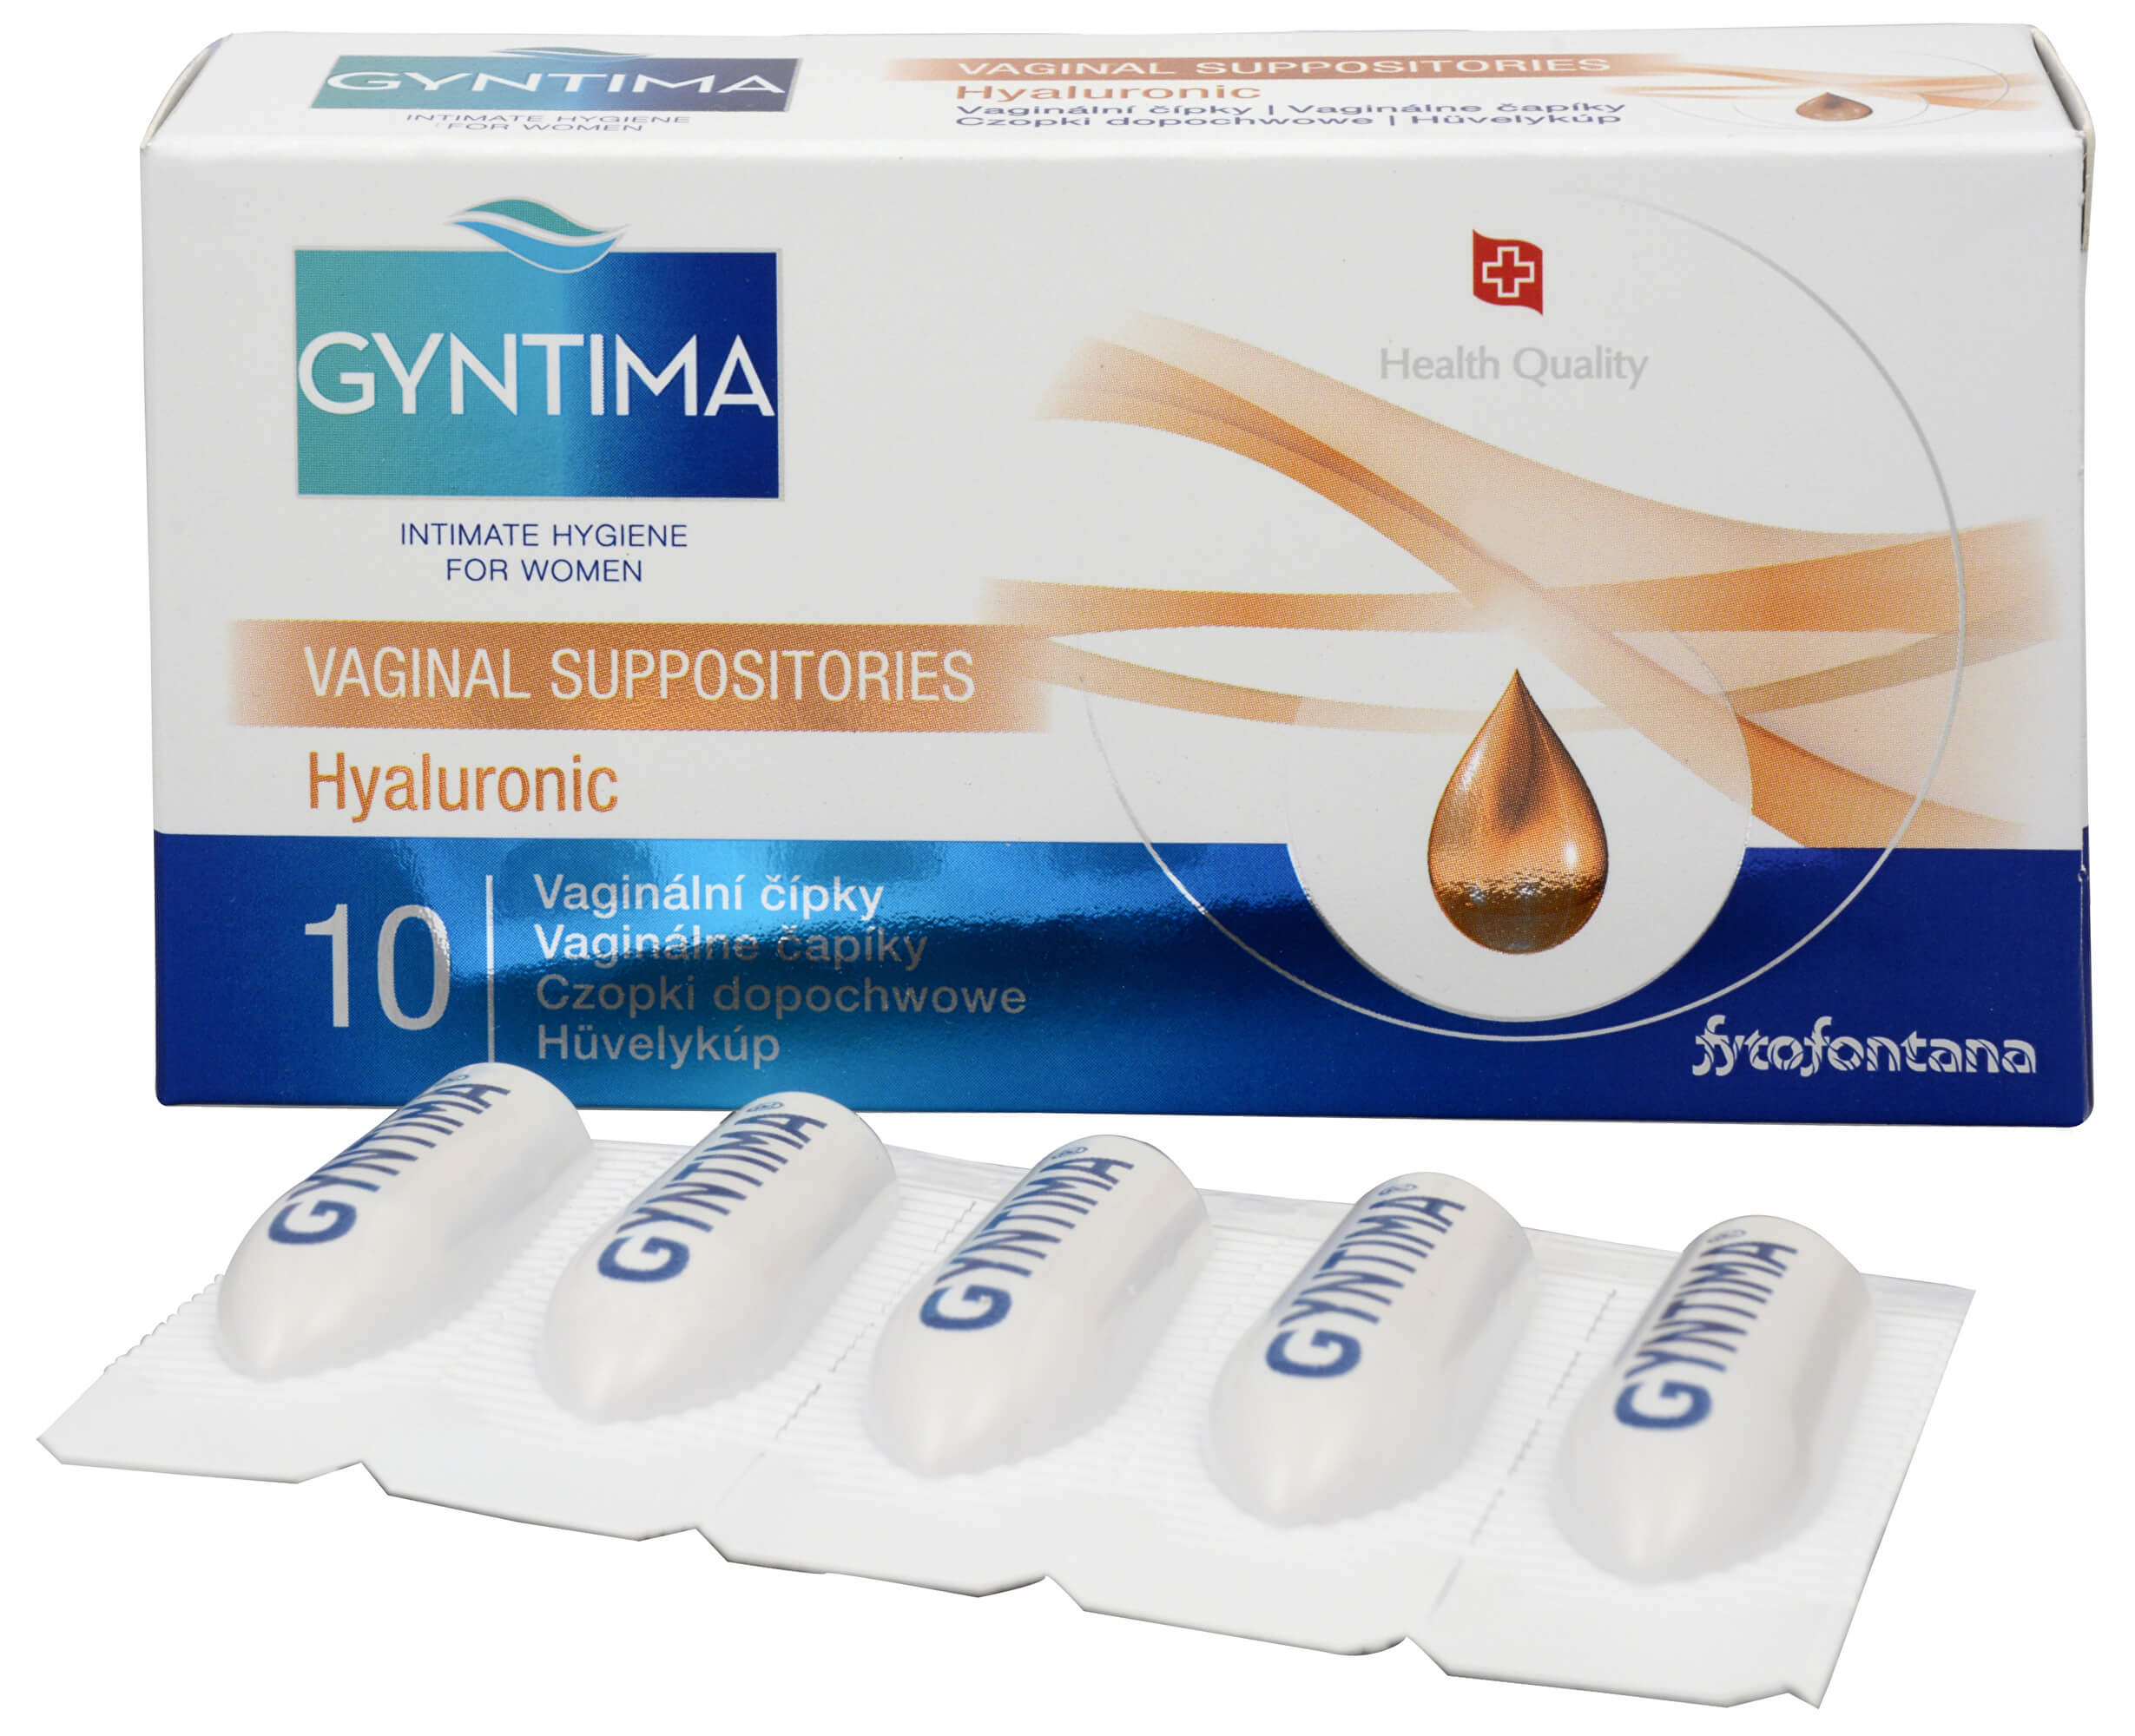 Zobrazit detail výrobku Fytofontana Gyntima vaginální čípky Hyaluronic 10 ks